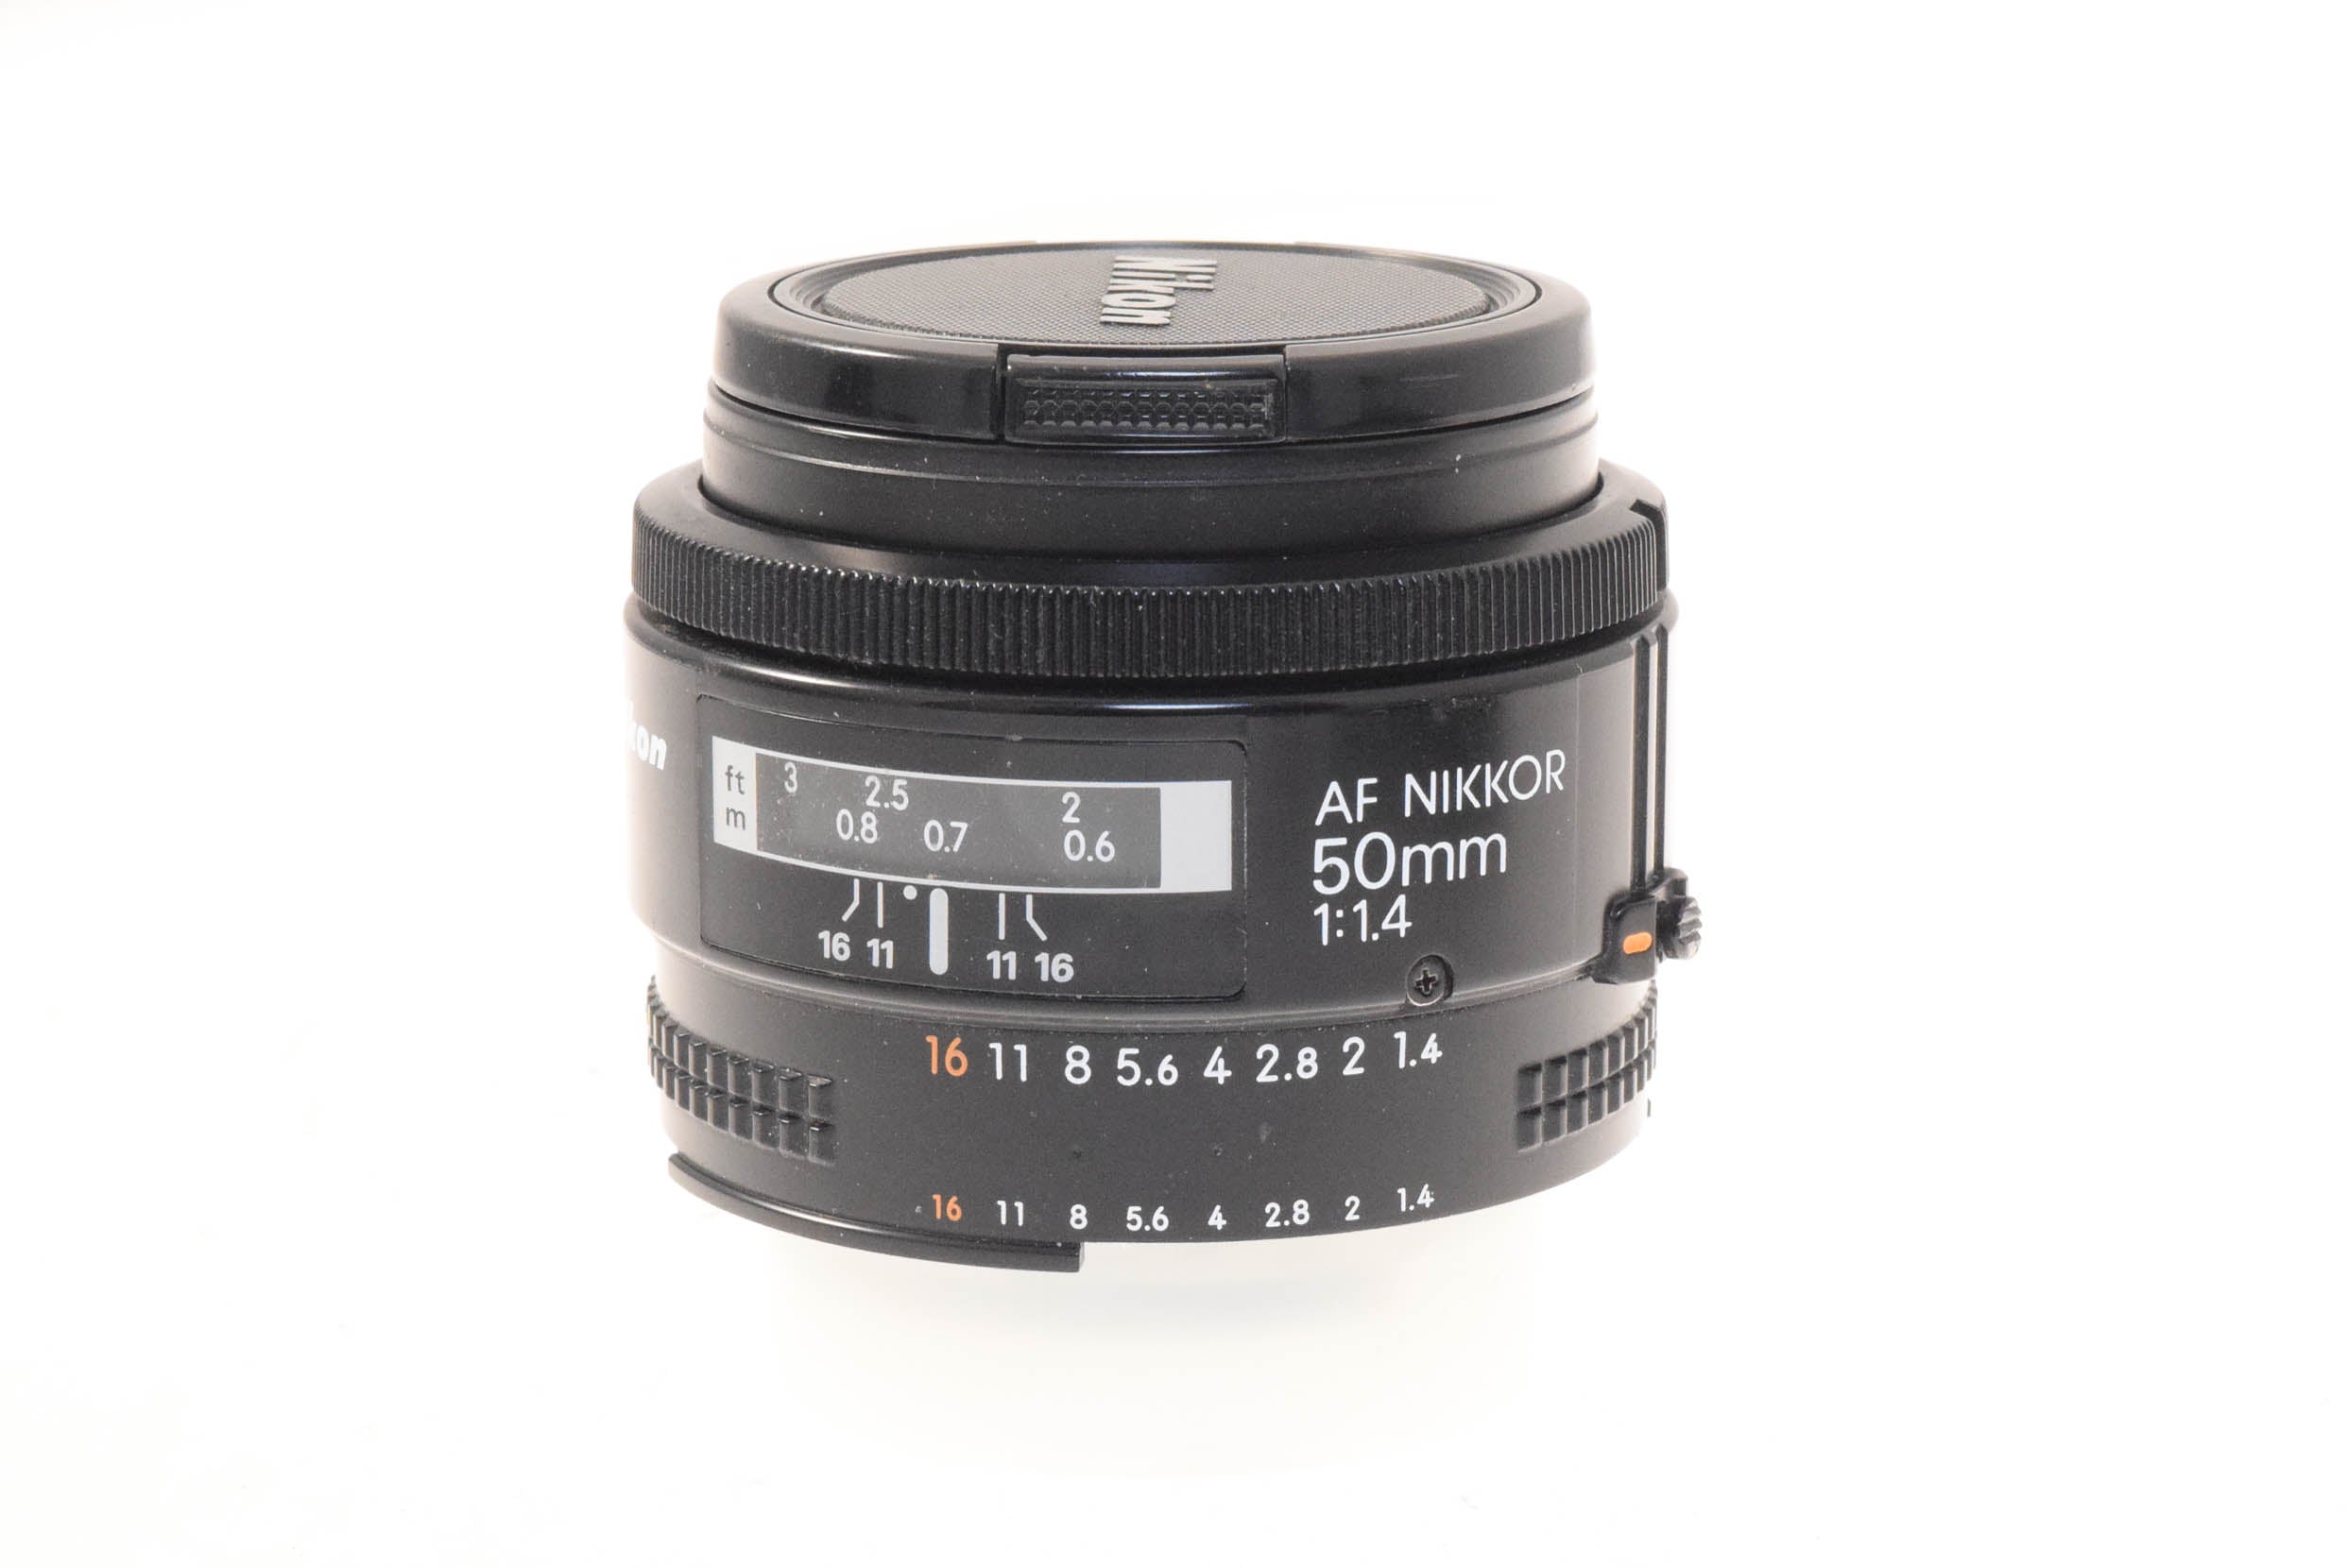 Nikon 50mm f1.4 AF Nikkor - Lens